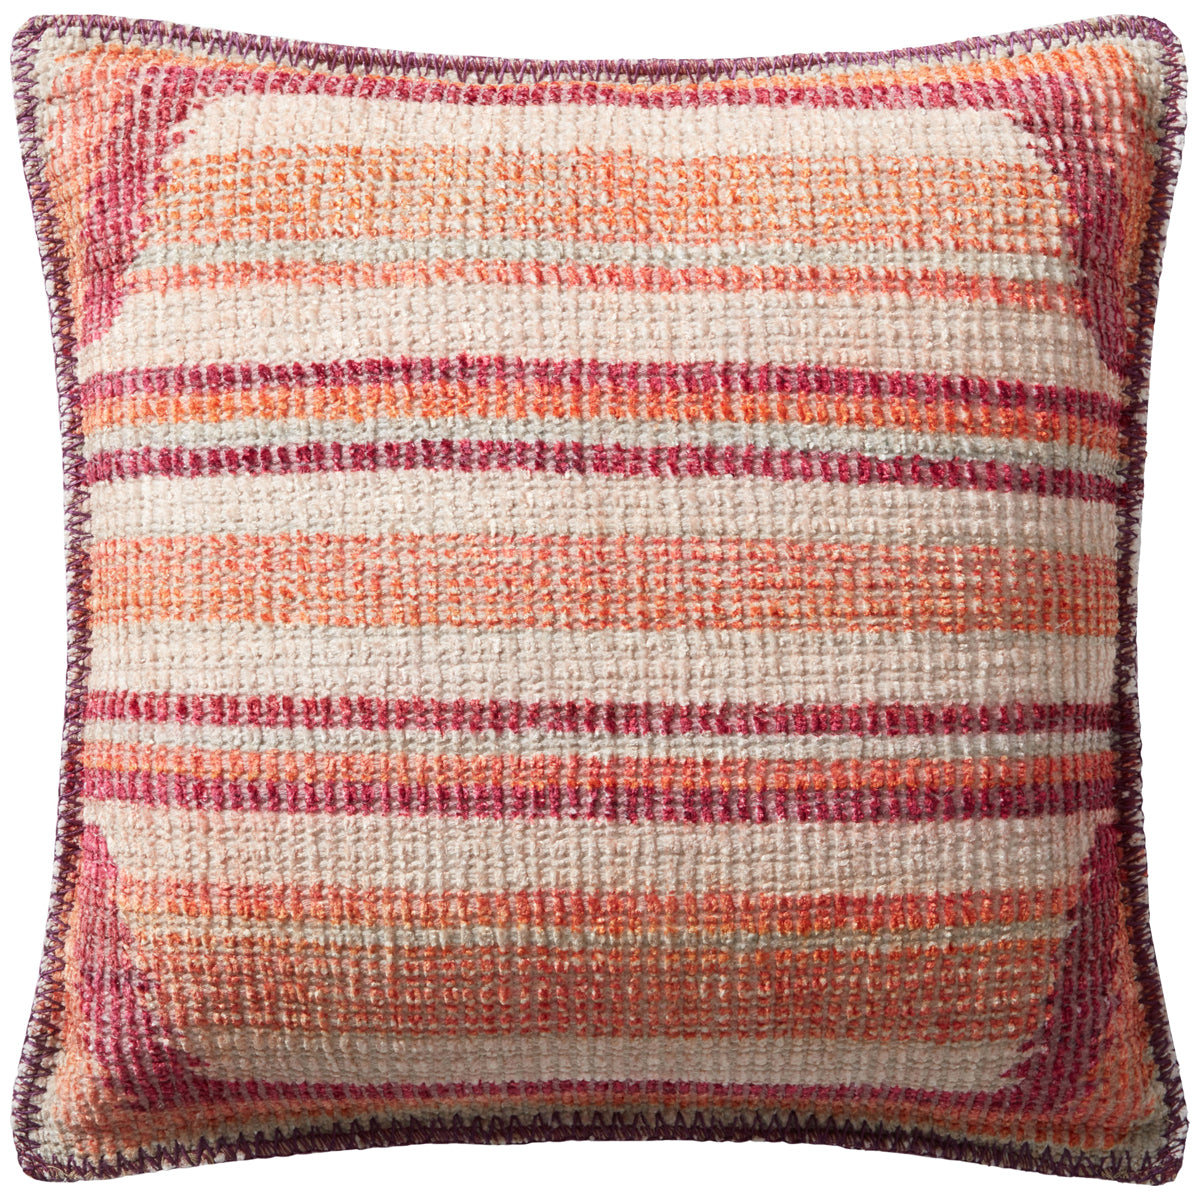 Loloi Justina Blakeney P0960 Pink Multi Pillow, Set of 2